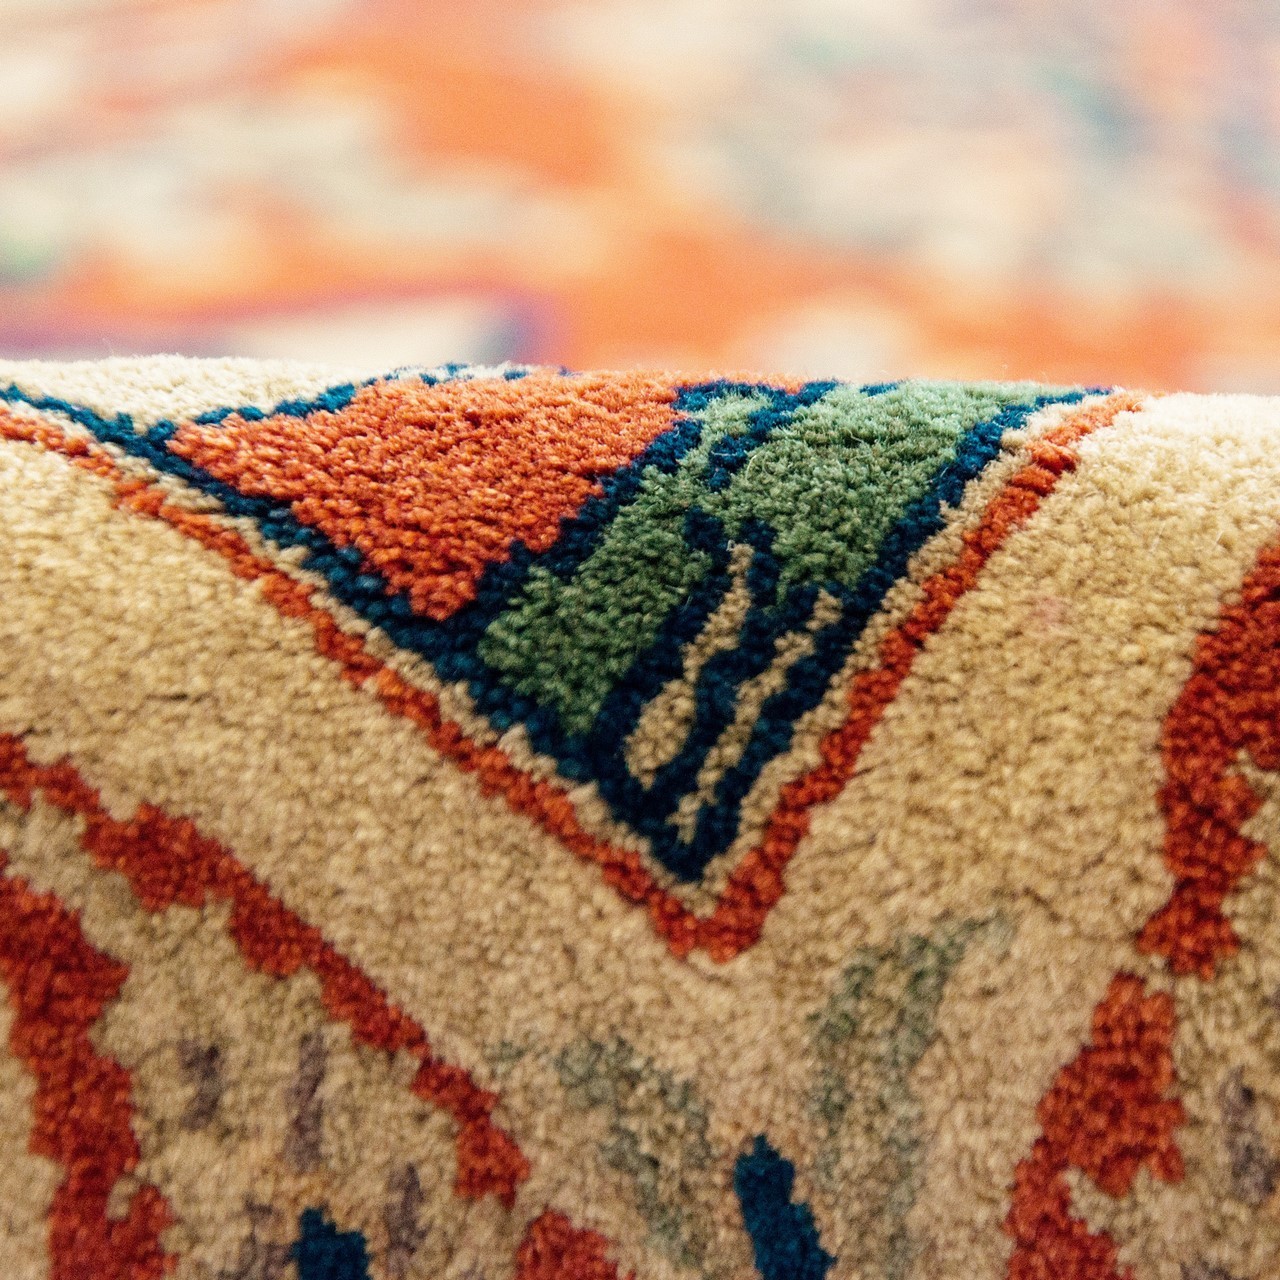 Ferahan Carpet Ref 101981